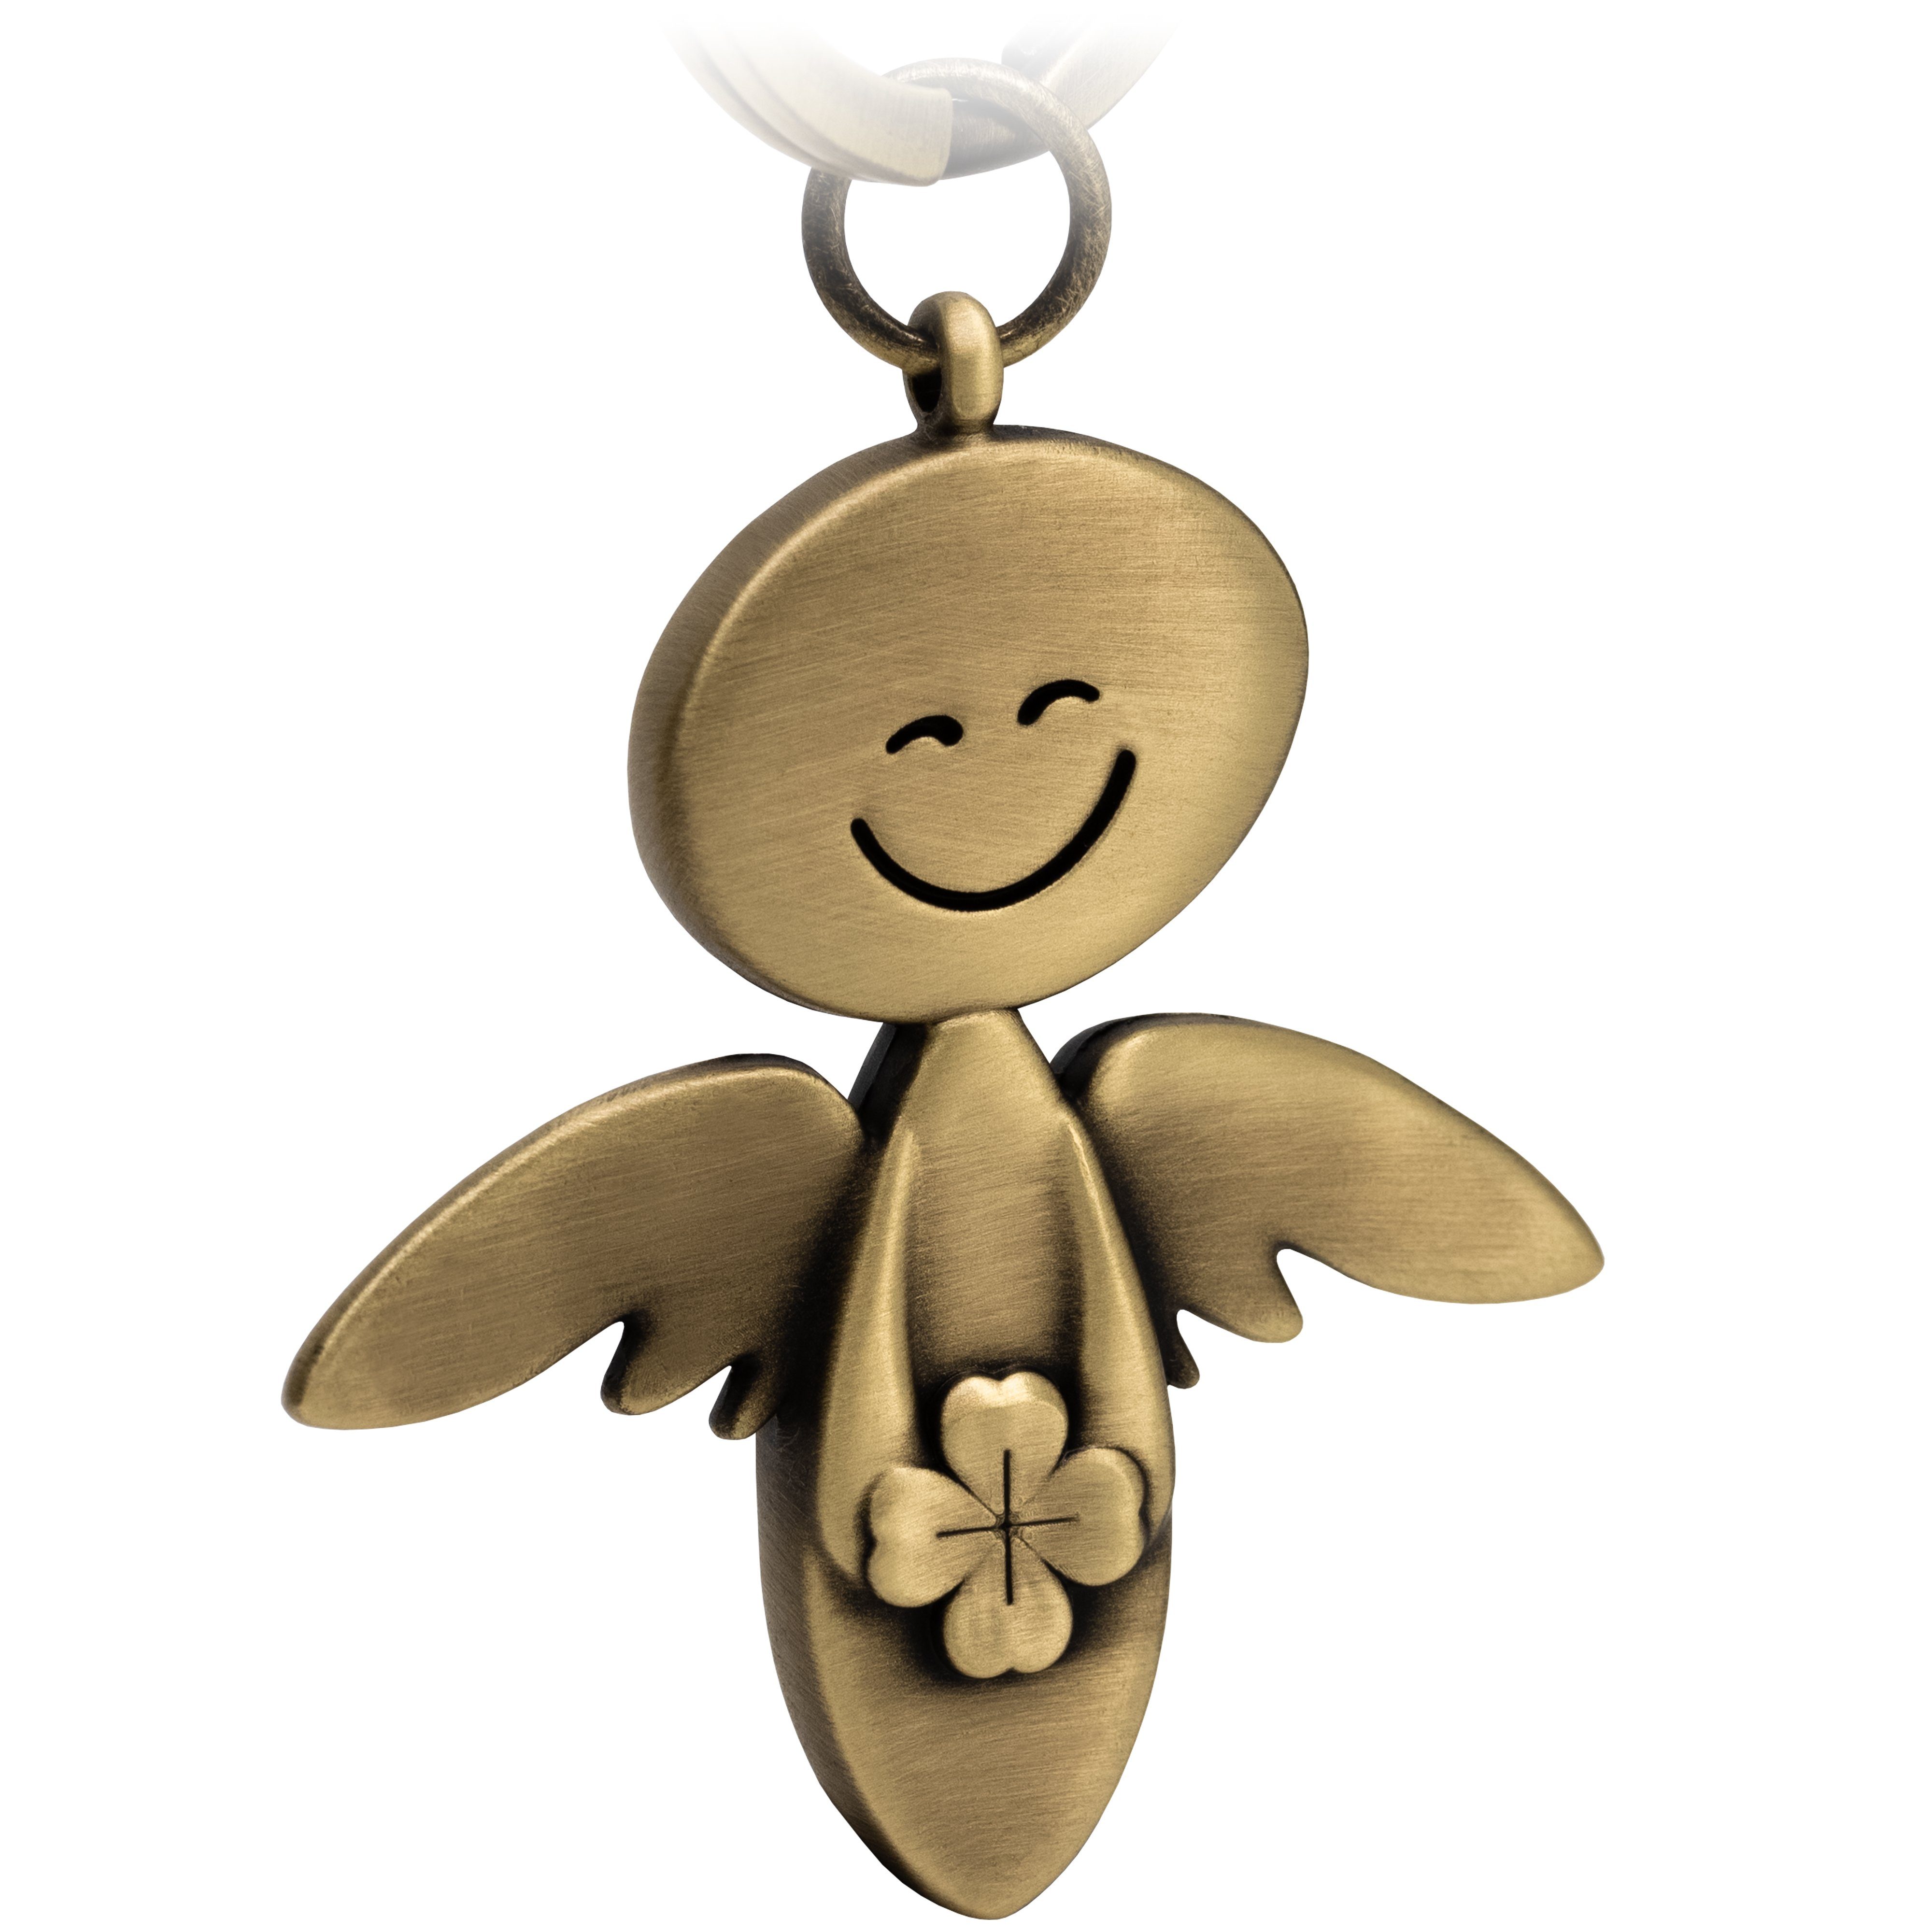 FABACH Schlüsselanhänger Schutzengel Smile mit Kleeblatt - Geschenk Glücksbringer Mutmacher Antique Bronze